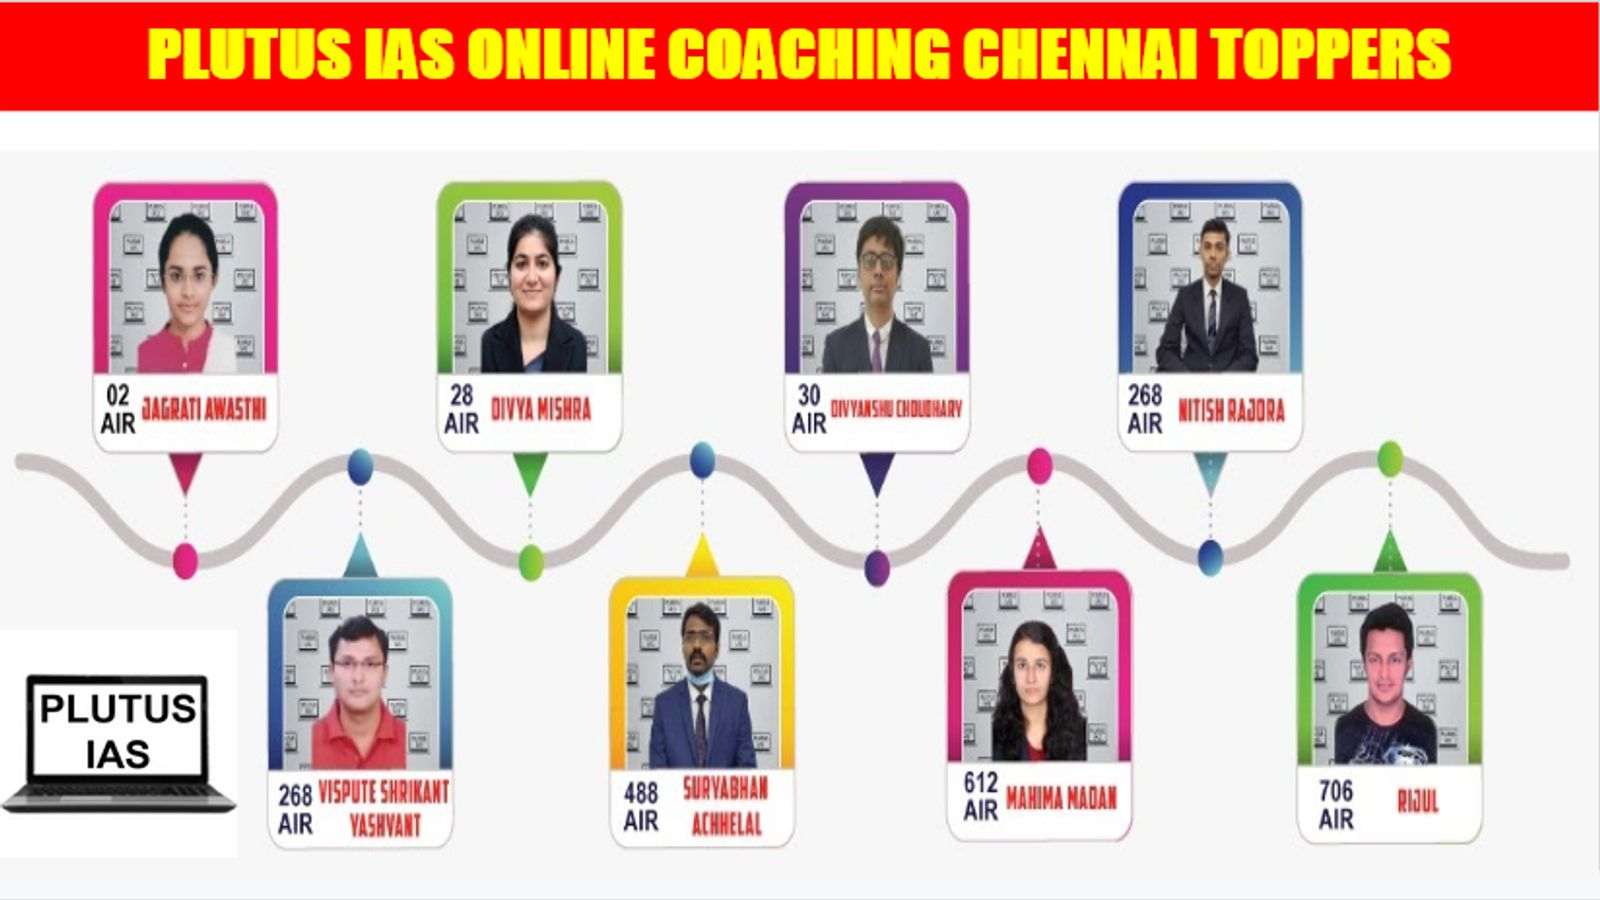 Plutus IAS Online Coaching Chennai Toppers